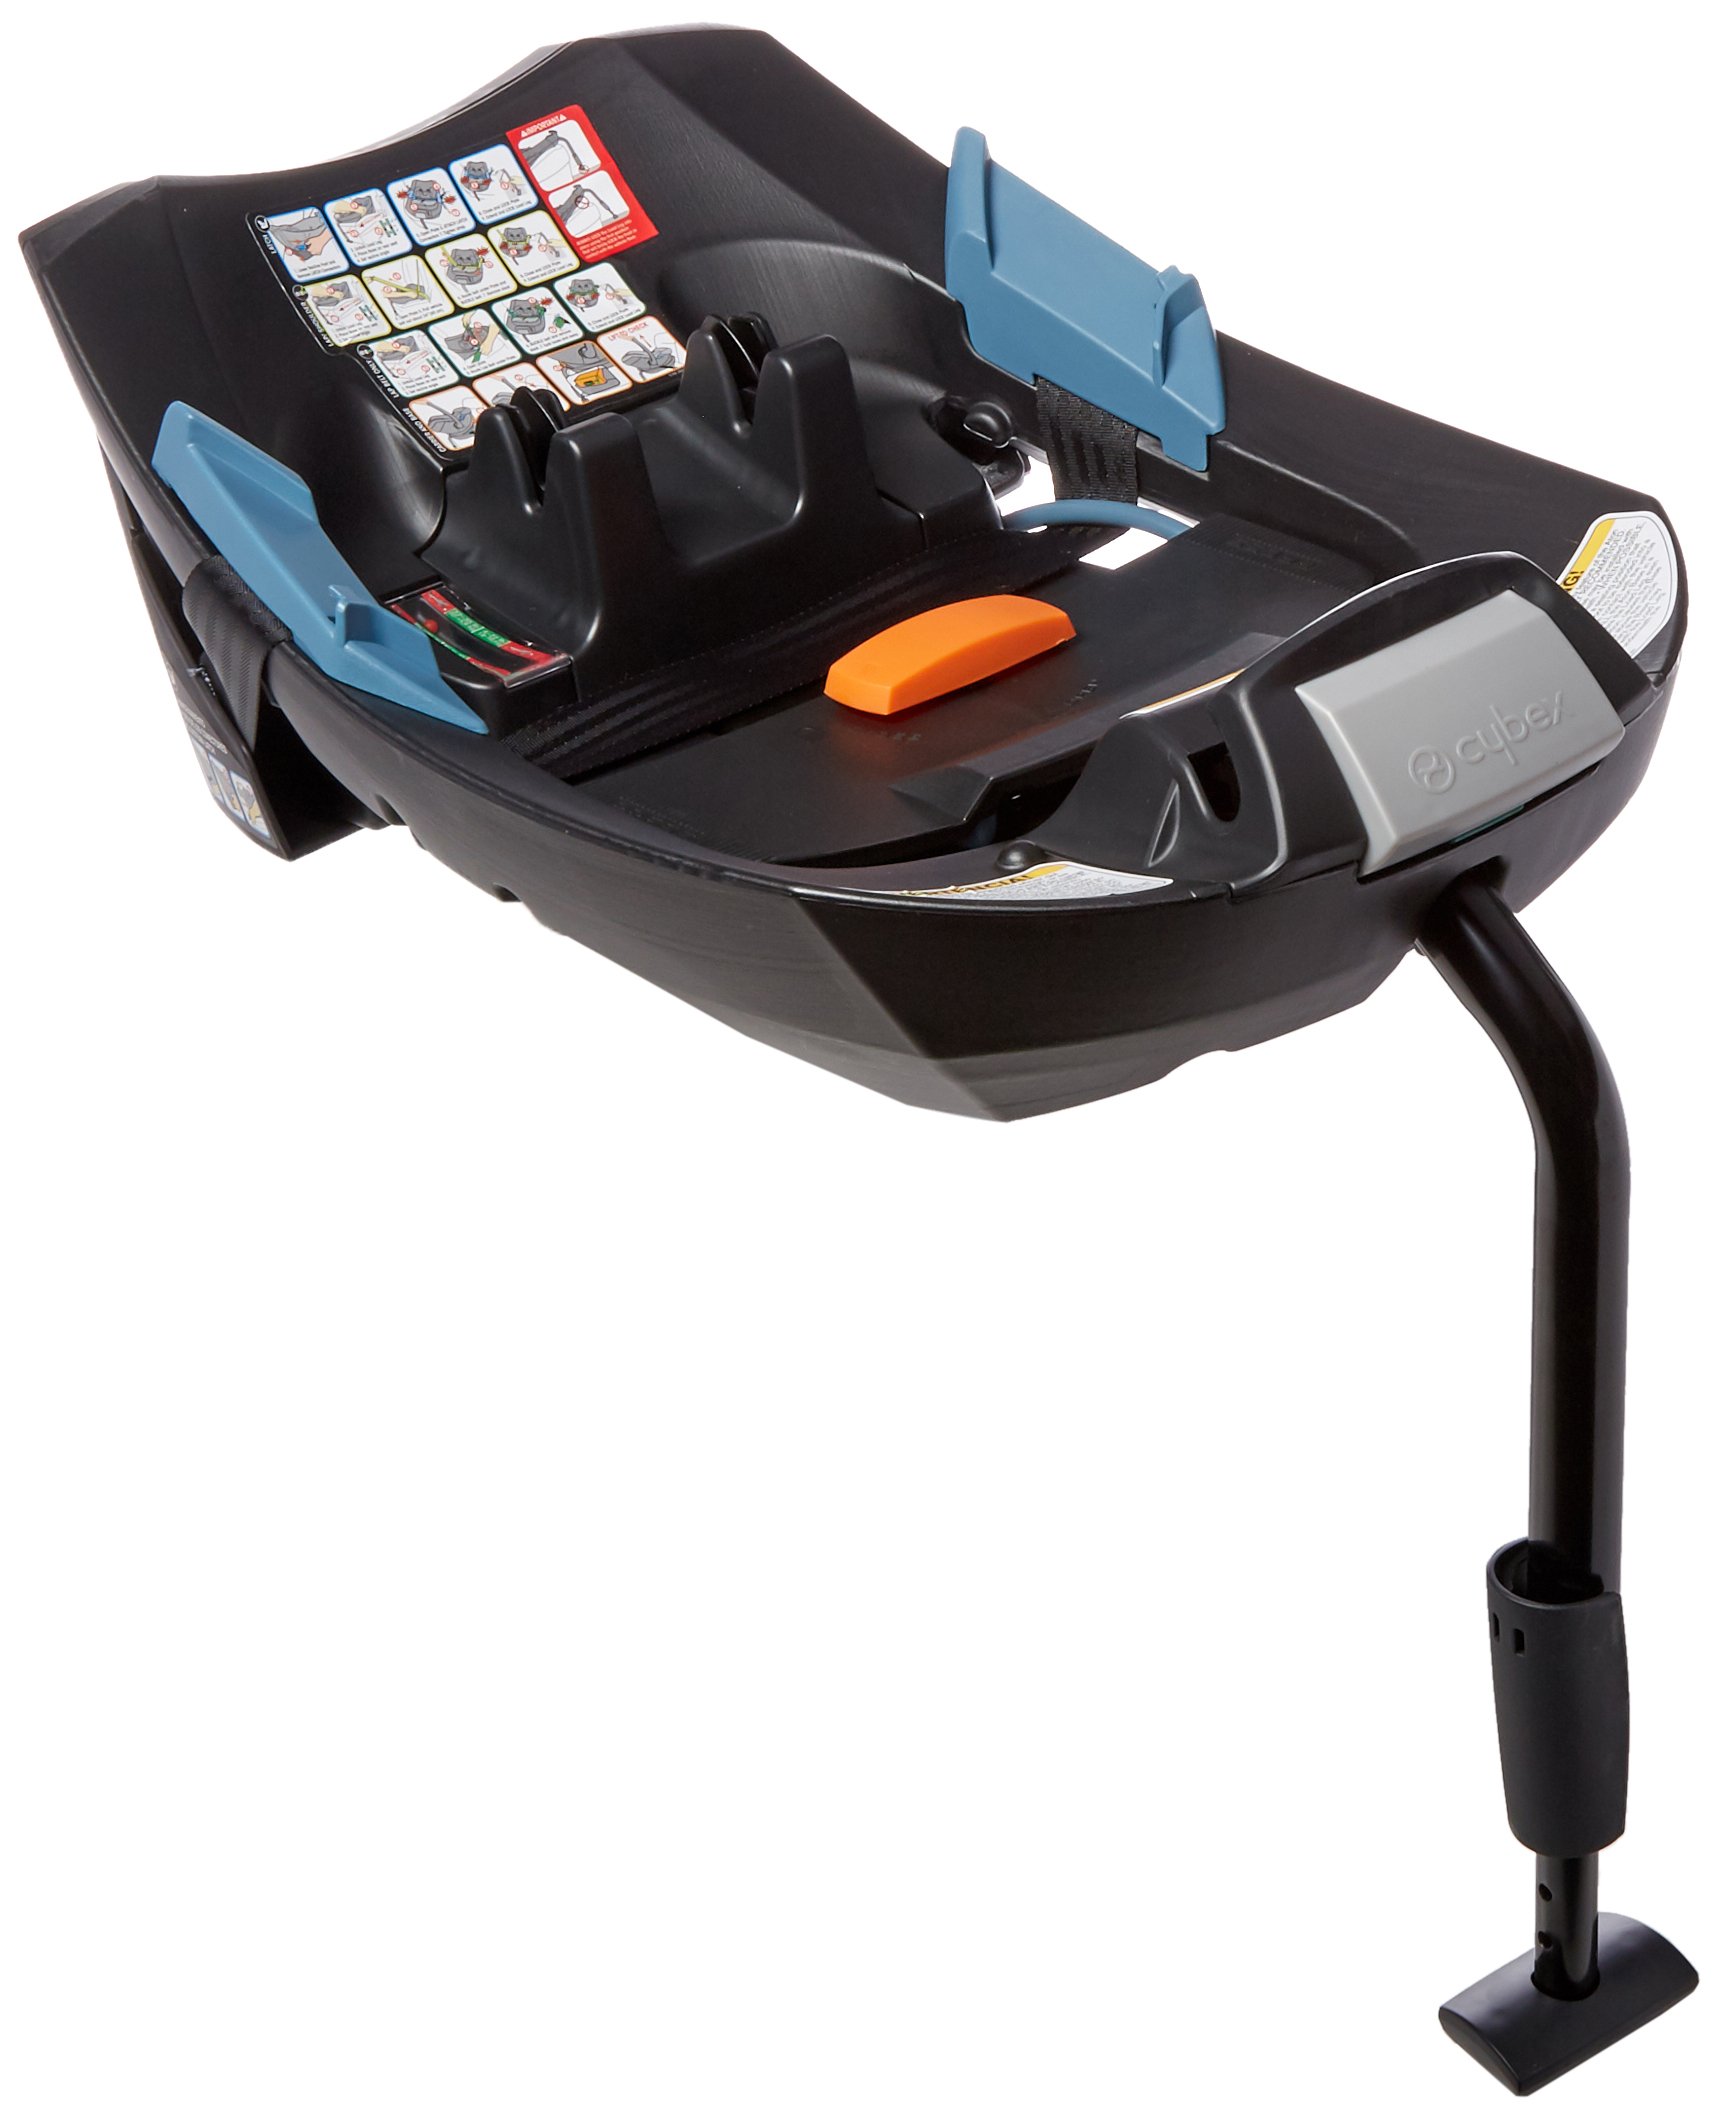 Cybex Aton 2 Infant Car Seat Base